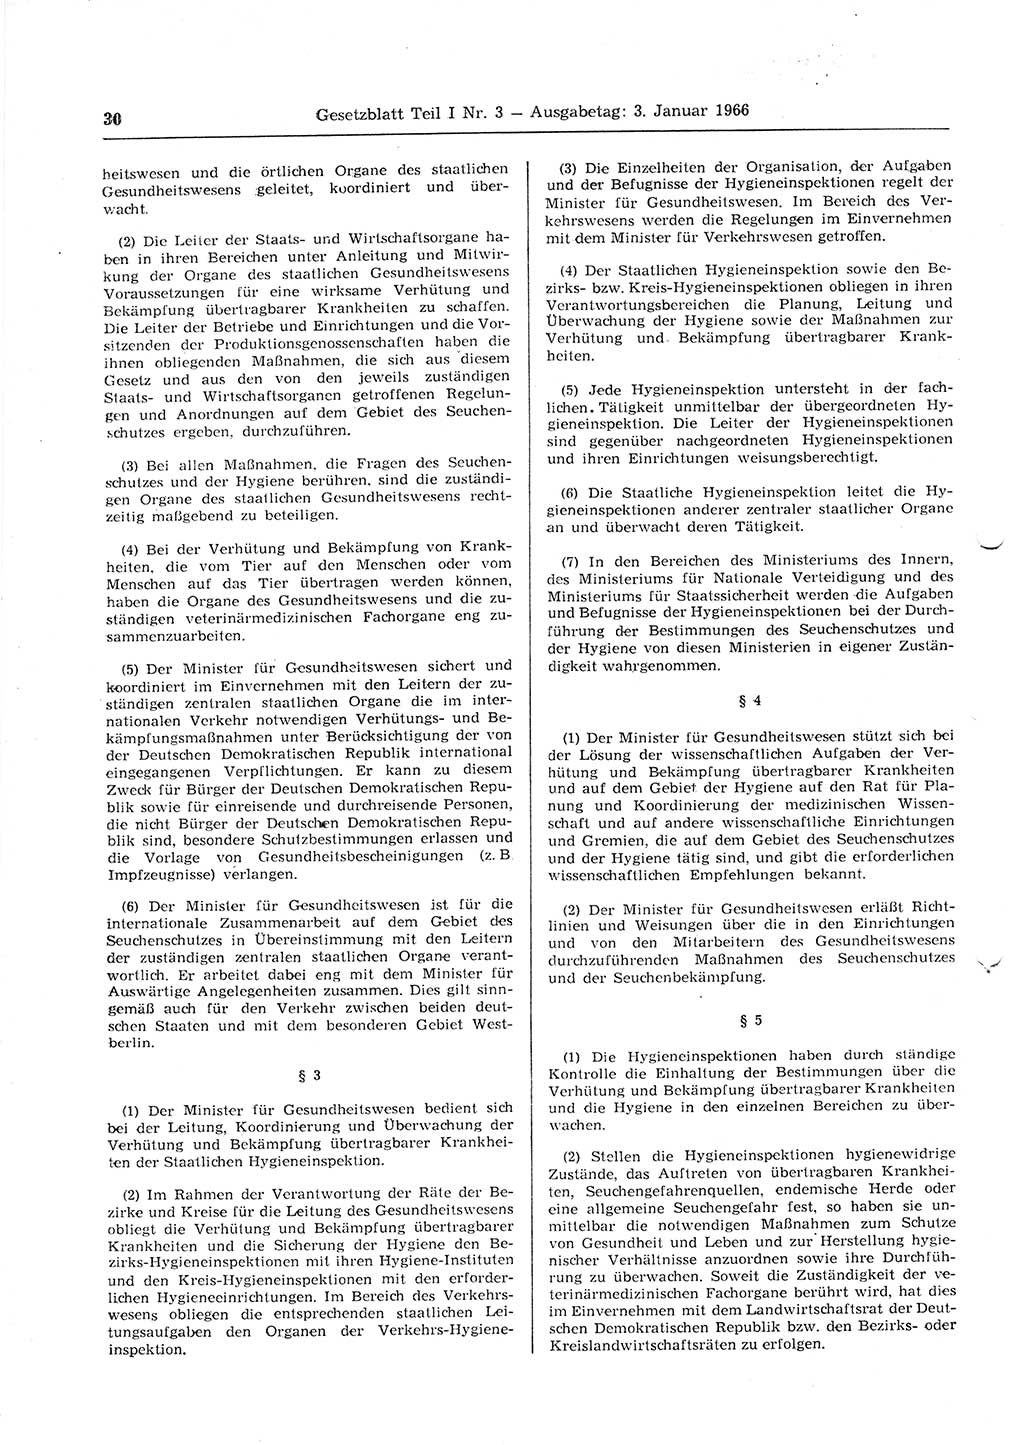 Gesetzblatt (GBl.) der Deutschen Demokratischen Republik (DDR) Teil Ⅰ 1966, Seite 30 (GBl. DDR Ⅰ 1966, S. 30)